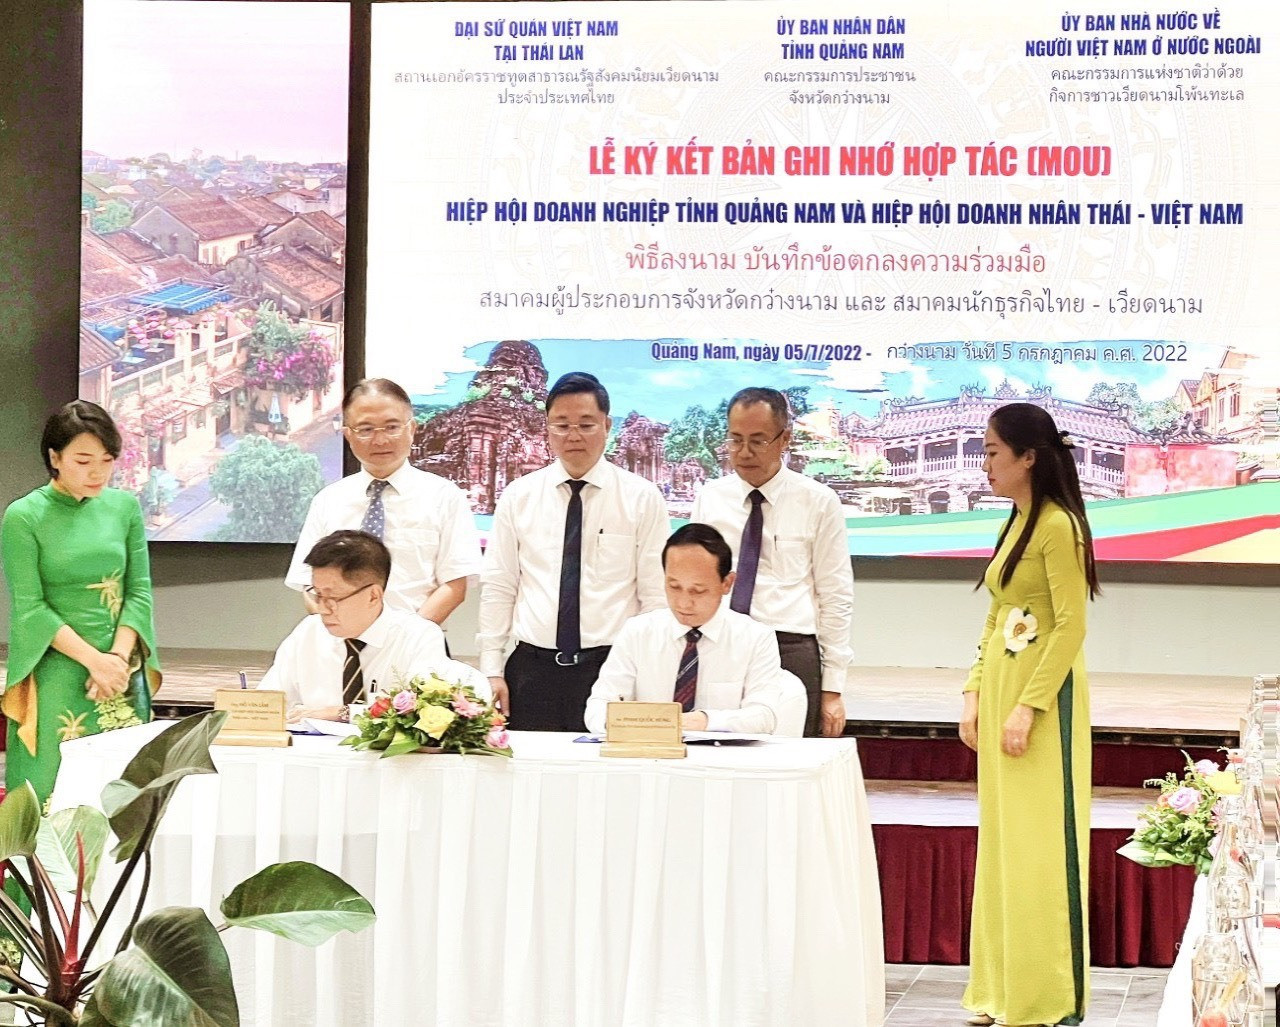 Hiệp hội doanh nghiệp Thái Lan và Quảng Nam ký kết hợp tác giao thương. Ảnh: T.DŨNG